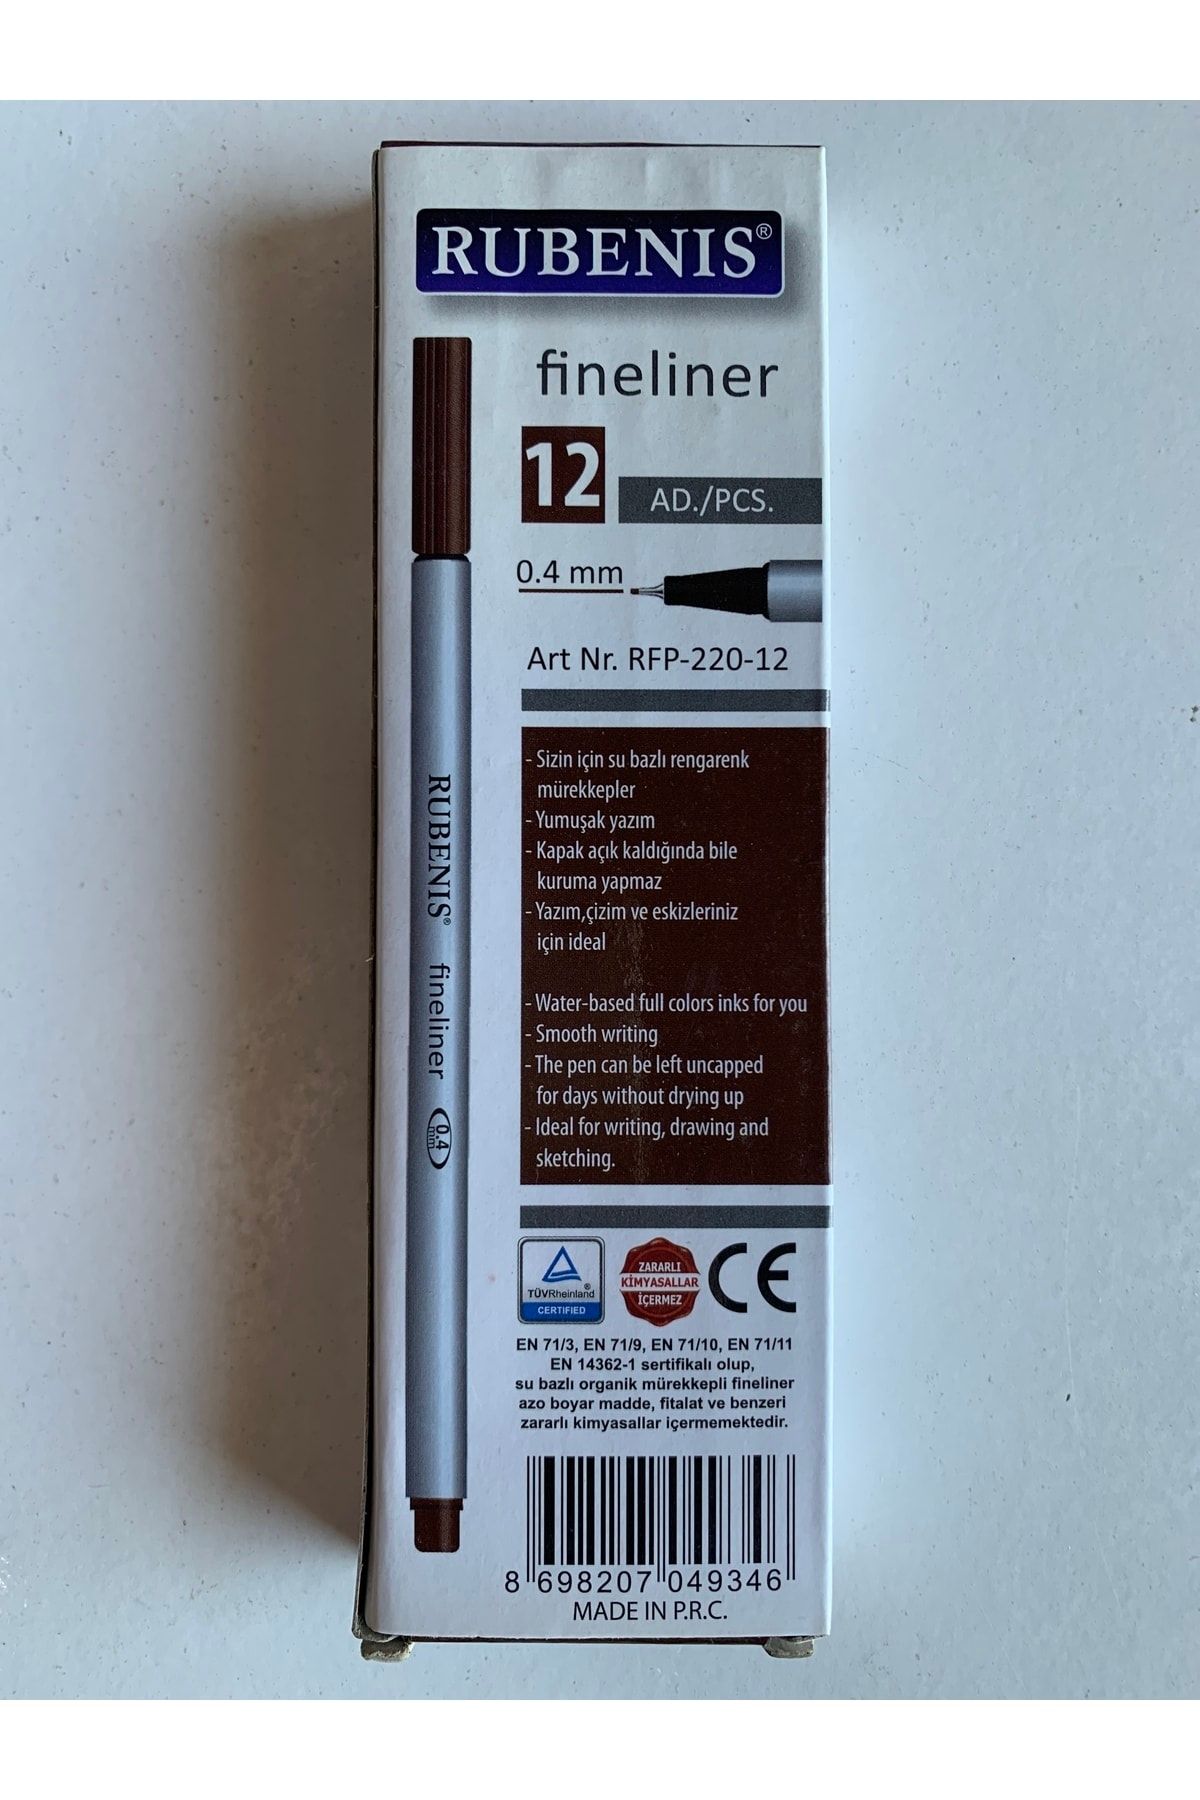 Rubenis 0.4mm Fineliner Kalem 12 Adet Rfp-220